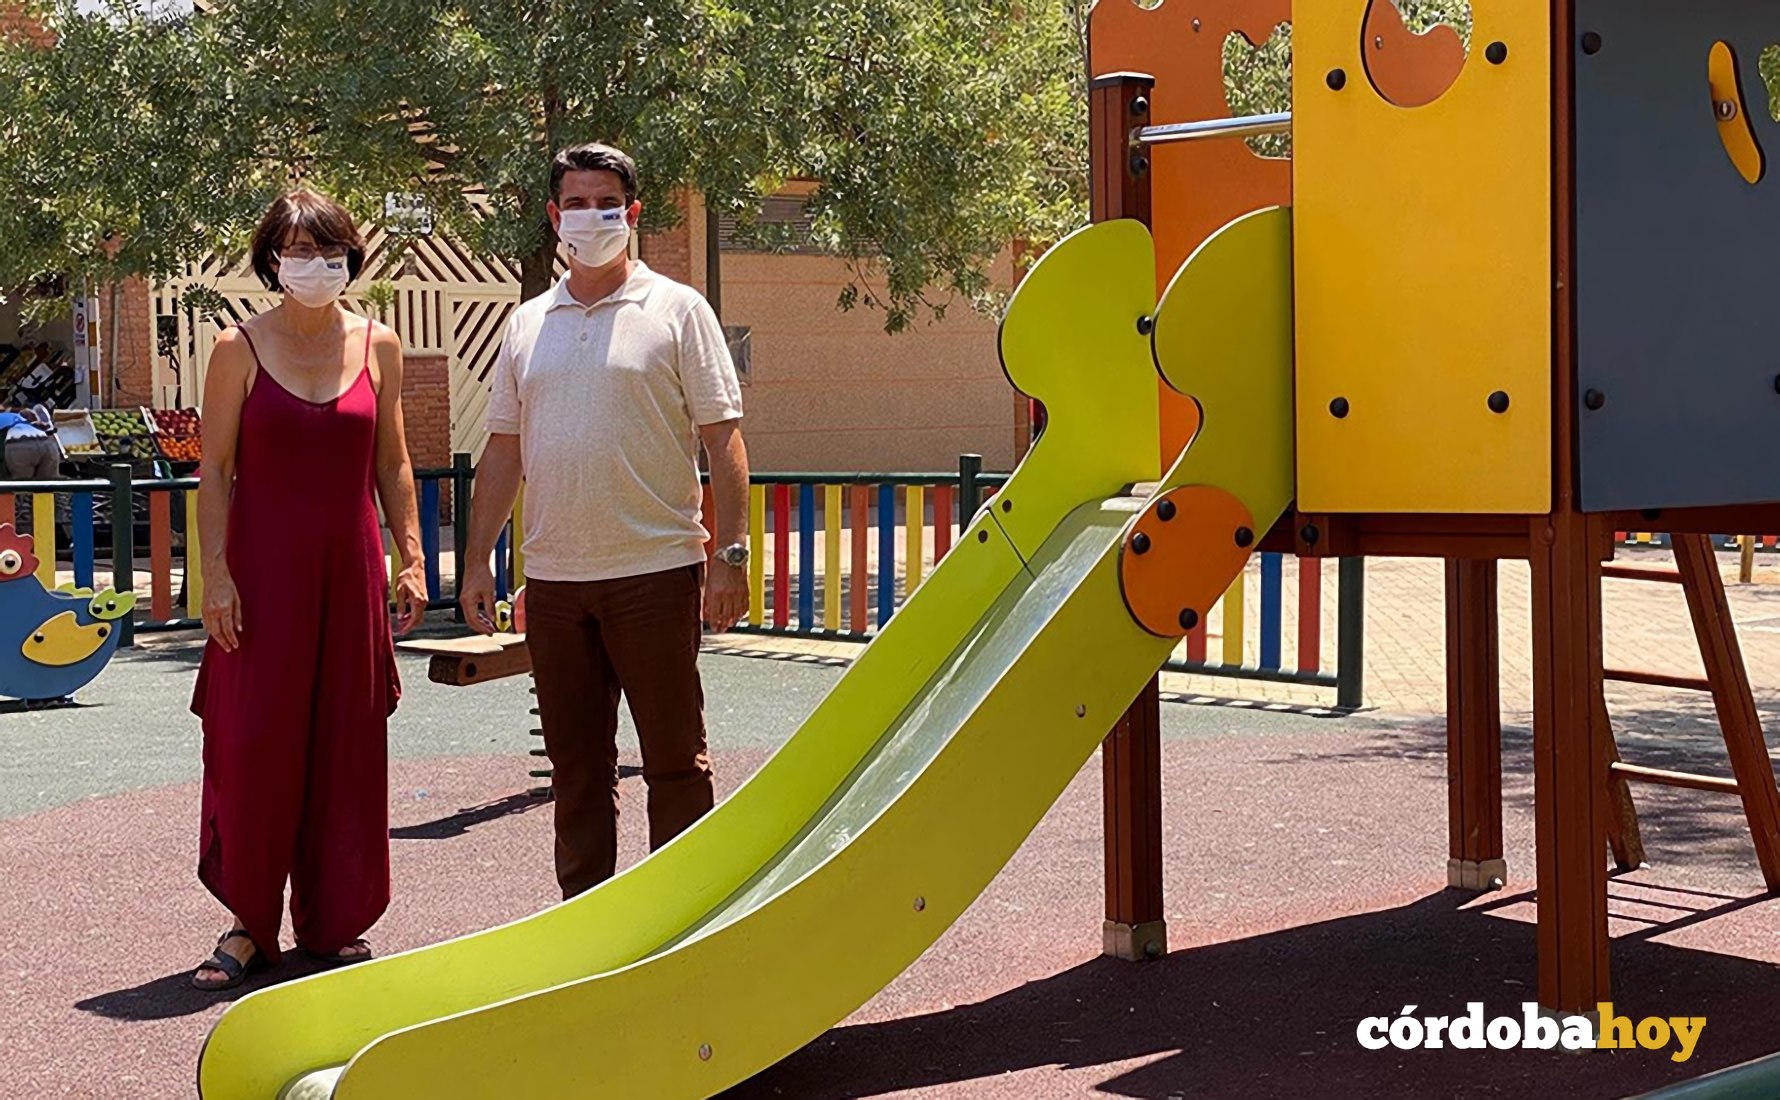 IU reclama al alcalde un plan de choque de limpieza y desinfección de parques infantiles y plazas